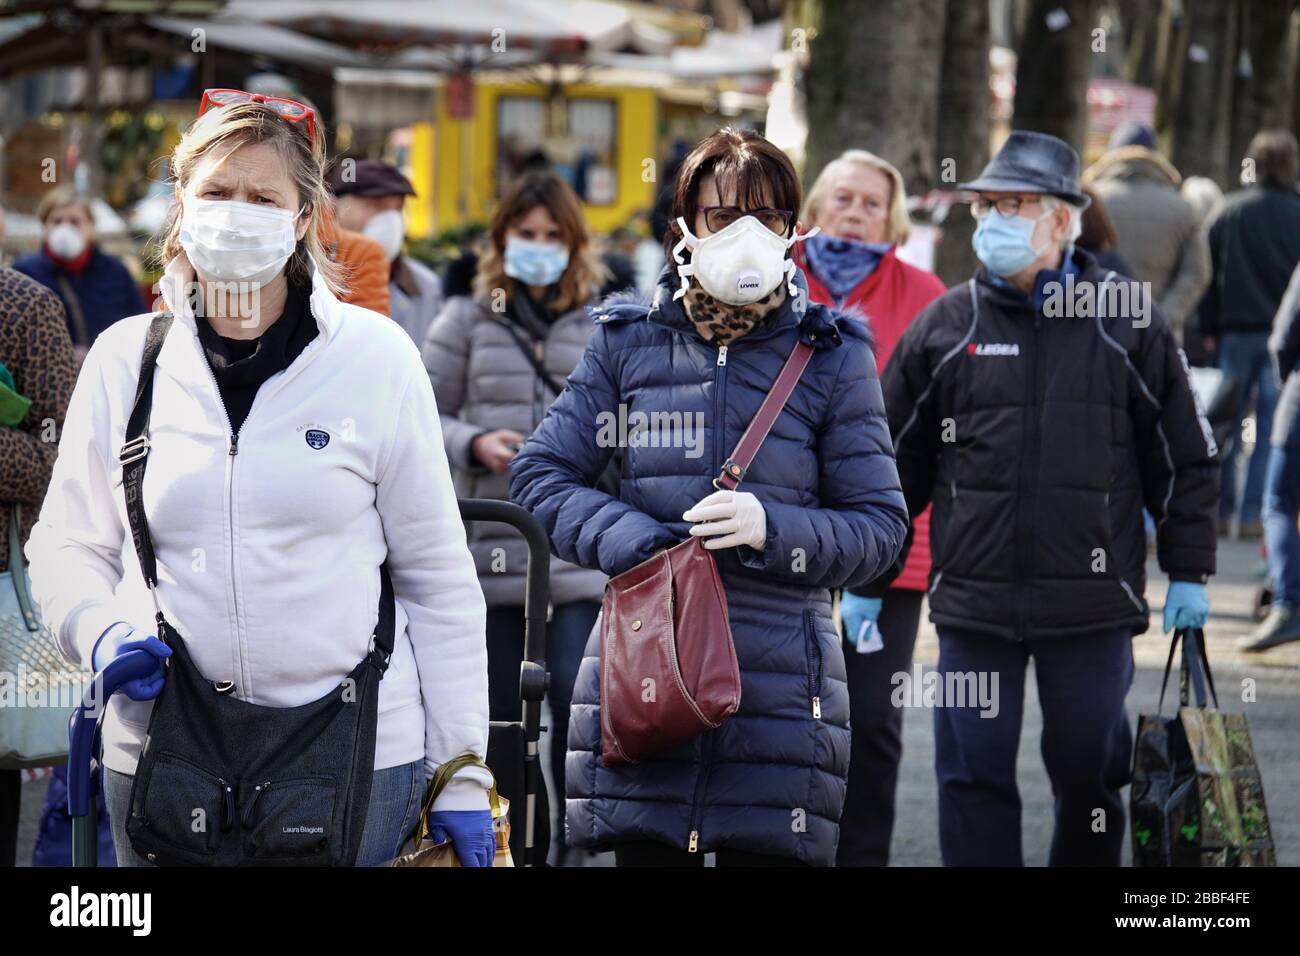 Persone sul mercato, con maschere facciali per la protezione da COVID-19. Torino, Italia - Marzo 2020 Foto Stock